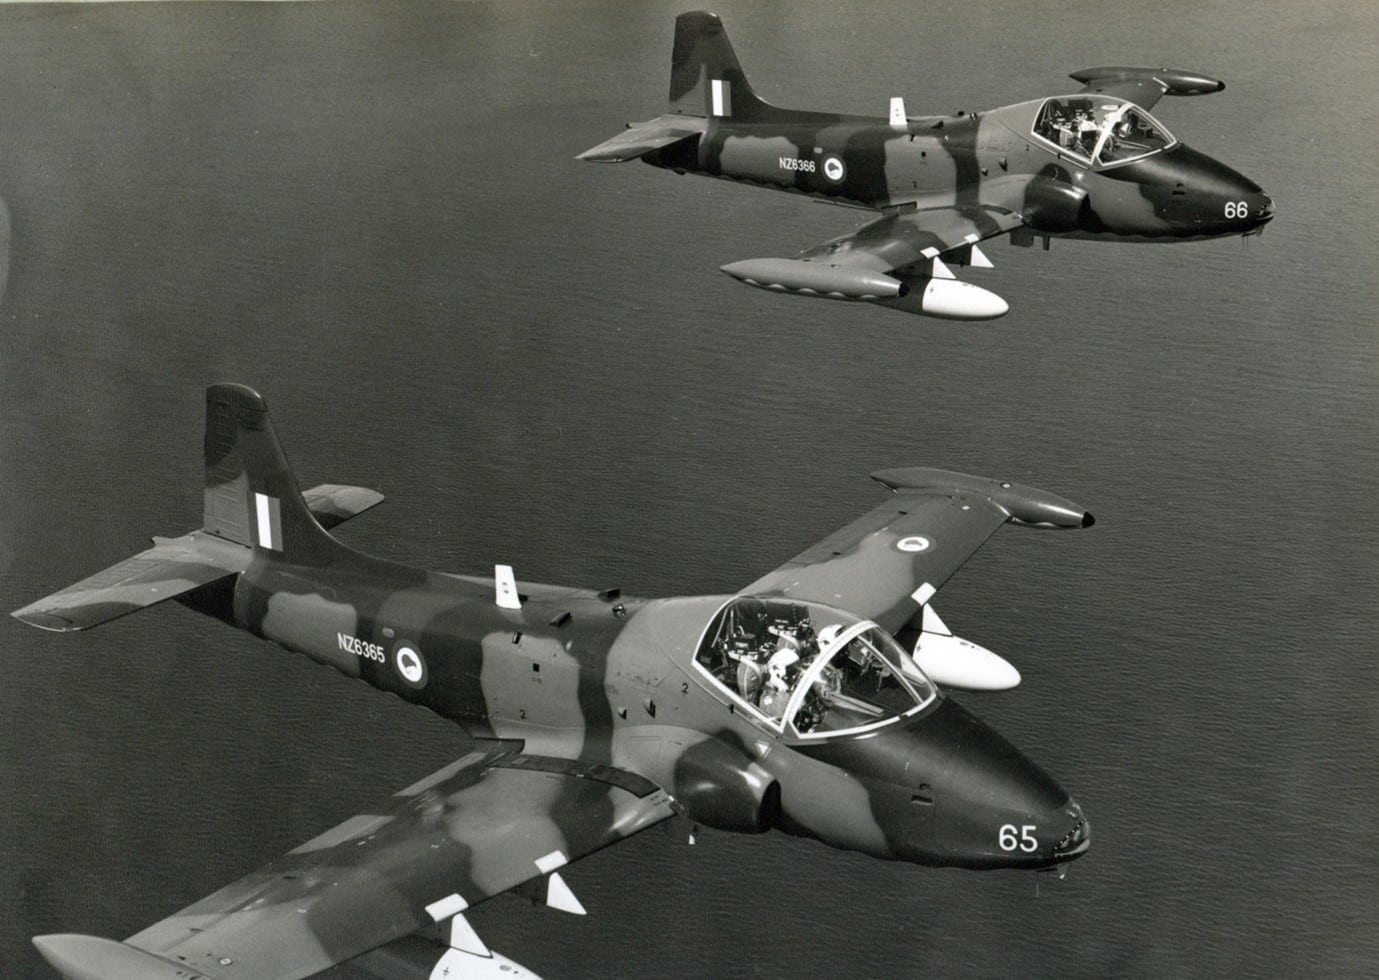 1973 Strikemasters NZ6365 and NZ6366 in flight